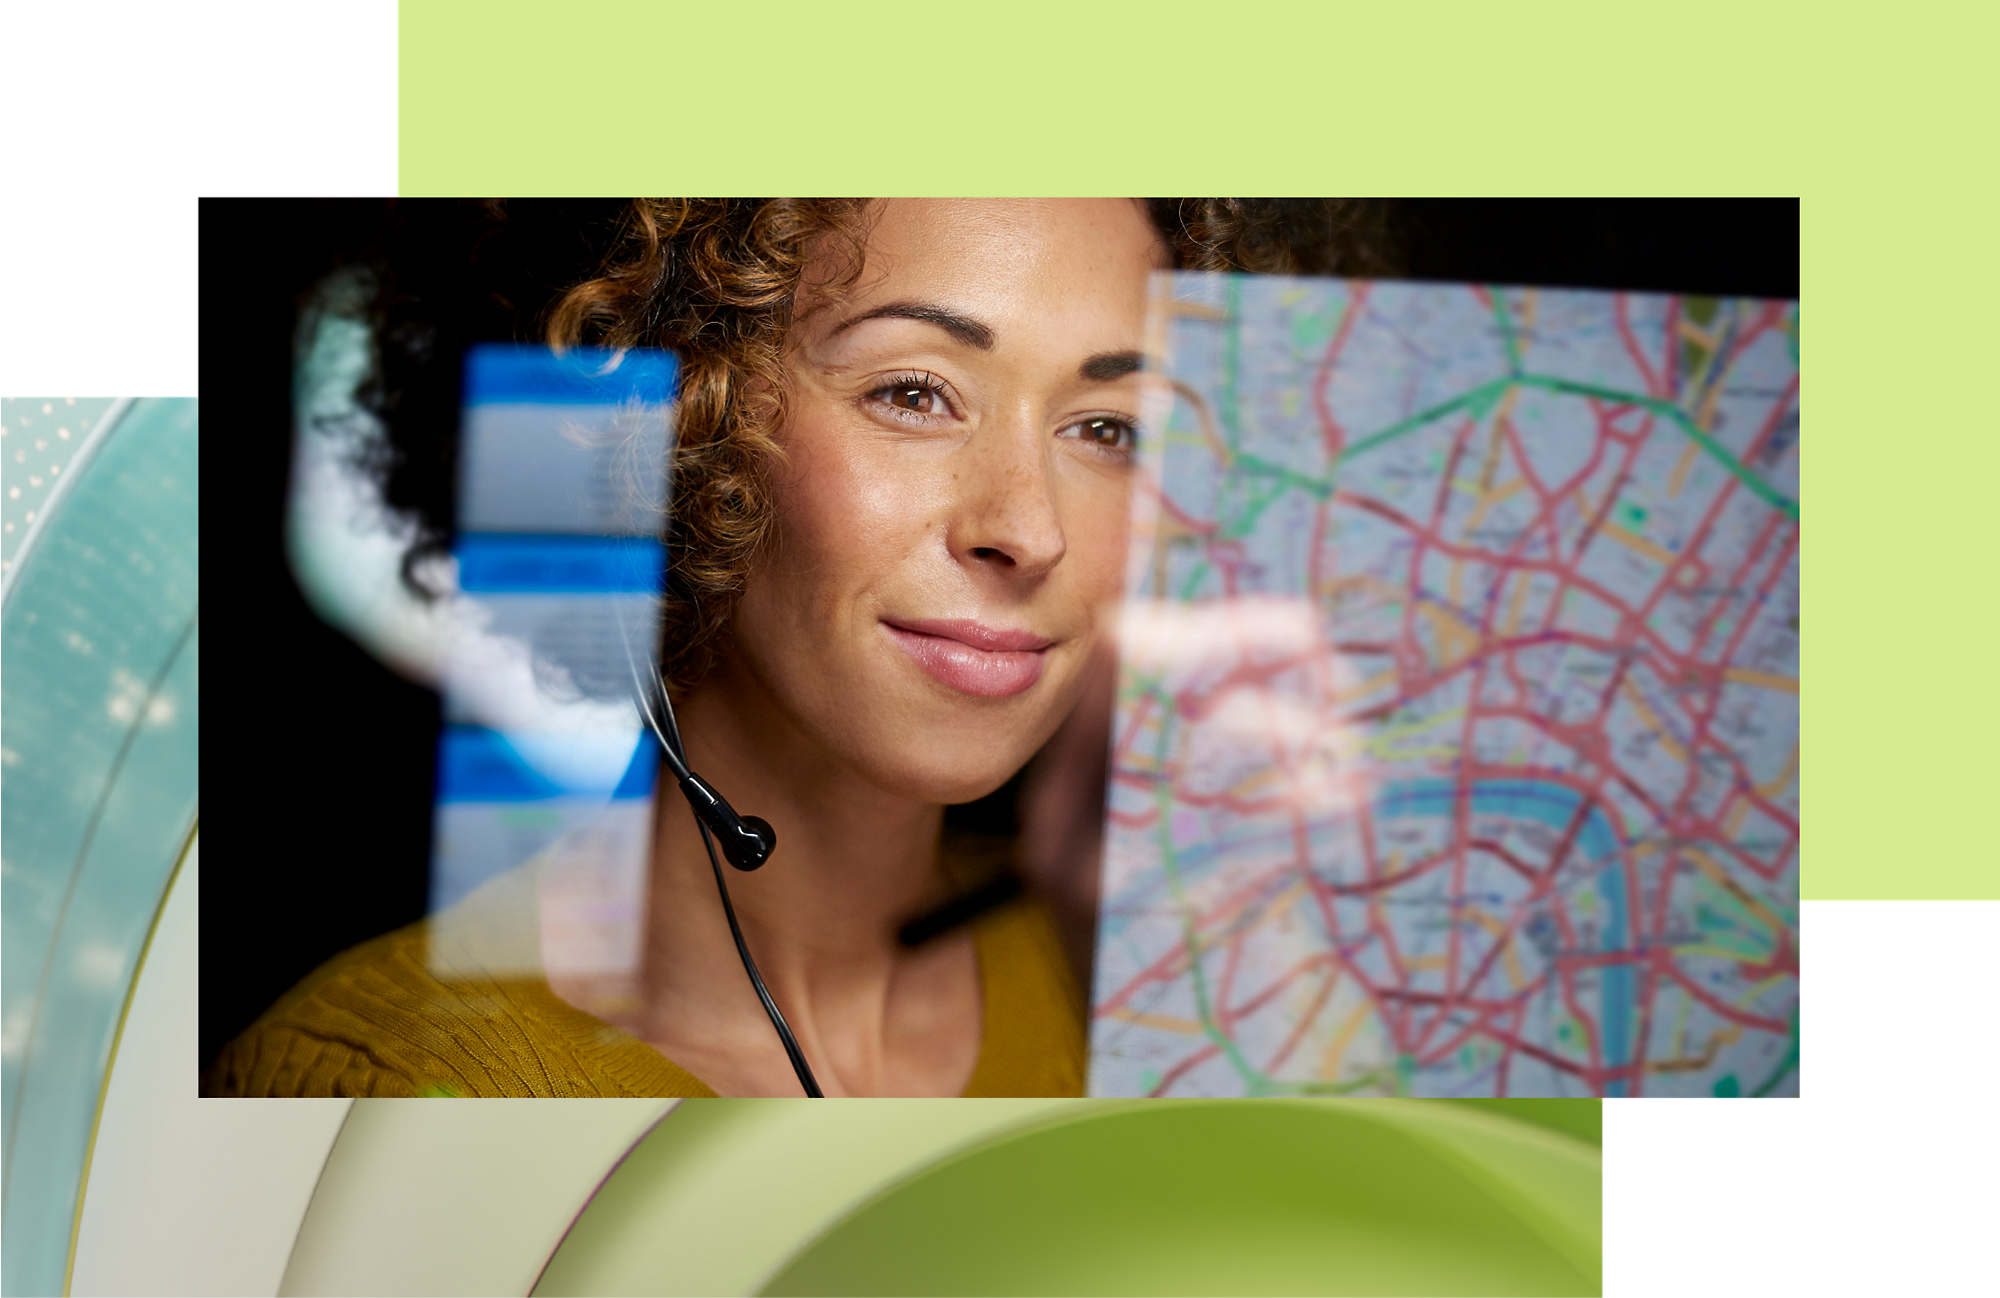 Reprezentant al serviciului pentru relații cu clienții purtând o cască și zâmbind în timp ce se uită pe hartă pe un ecran digital